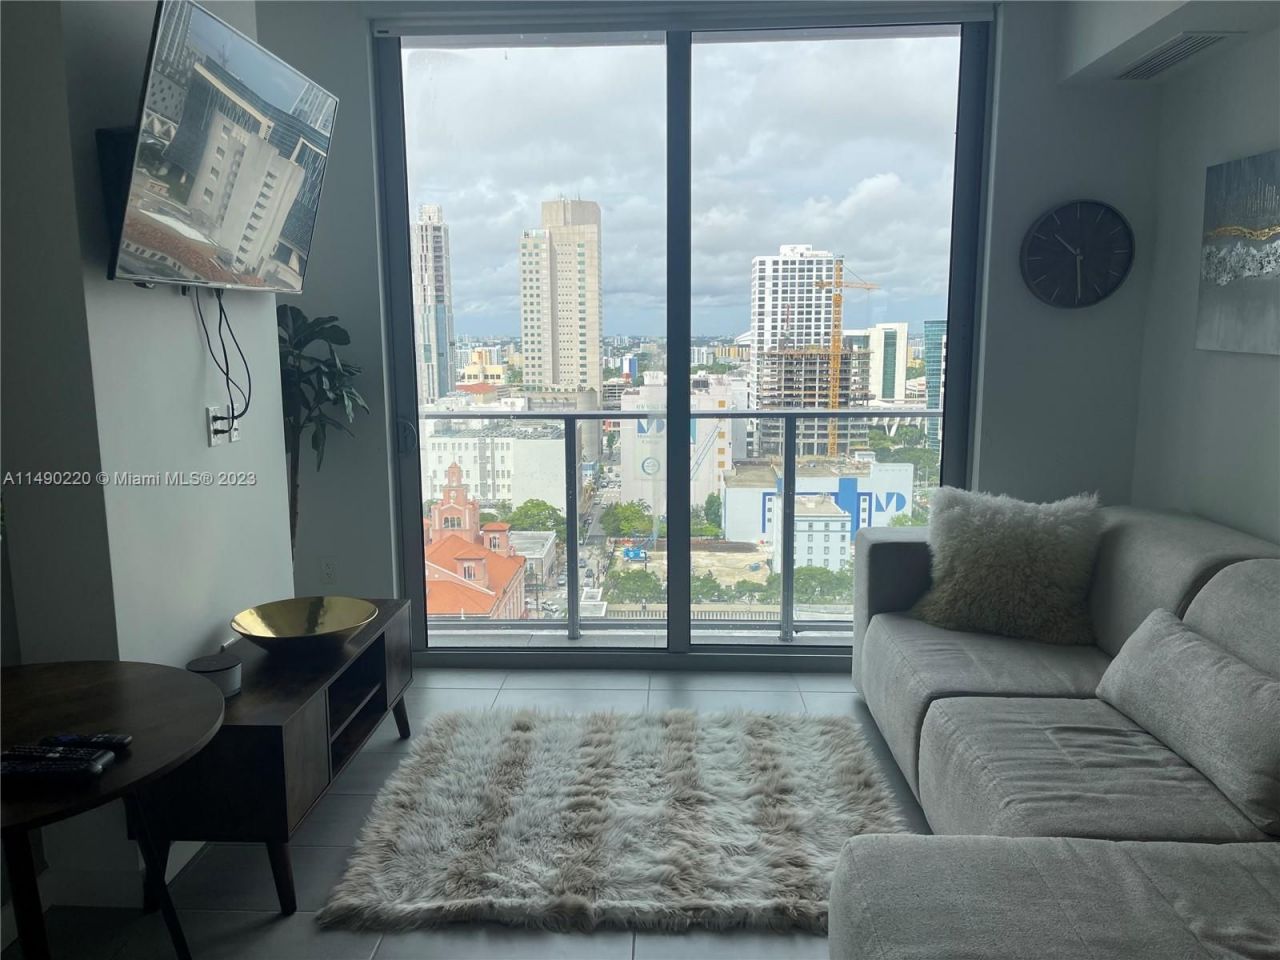 Appartement à Miami, États-Unis, 45 m2 - image 1